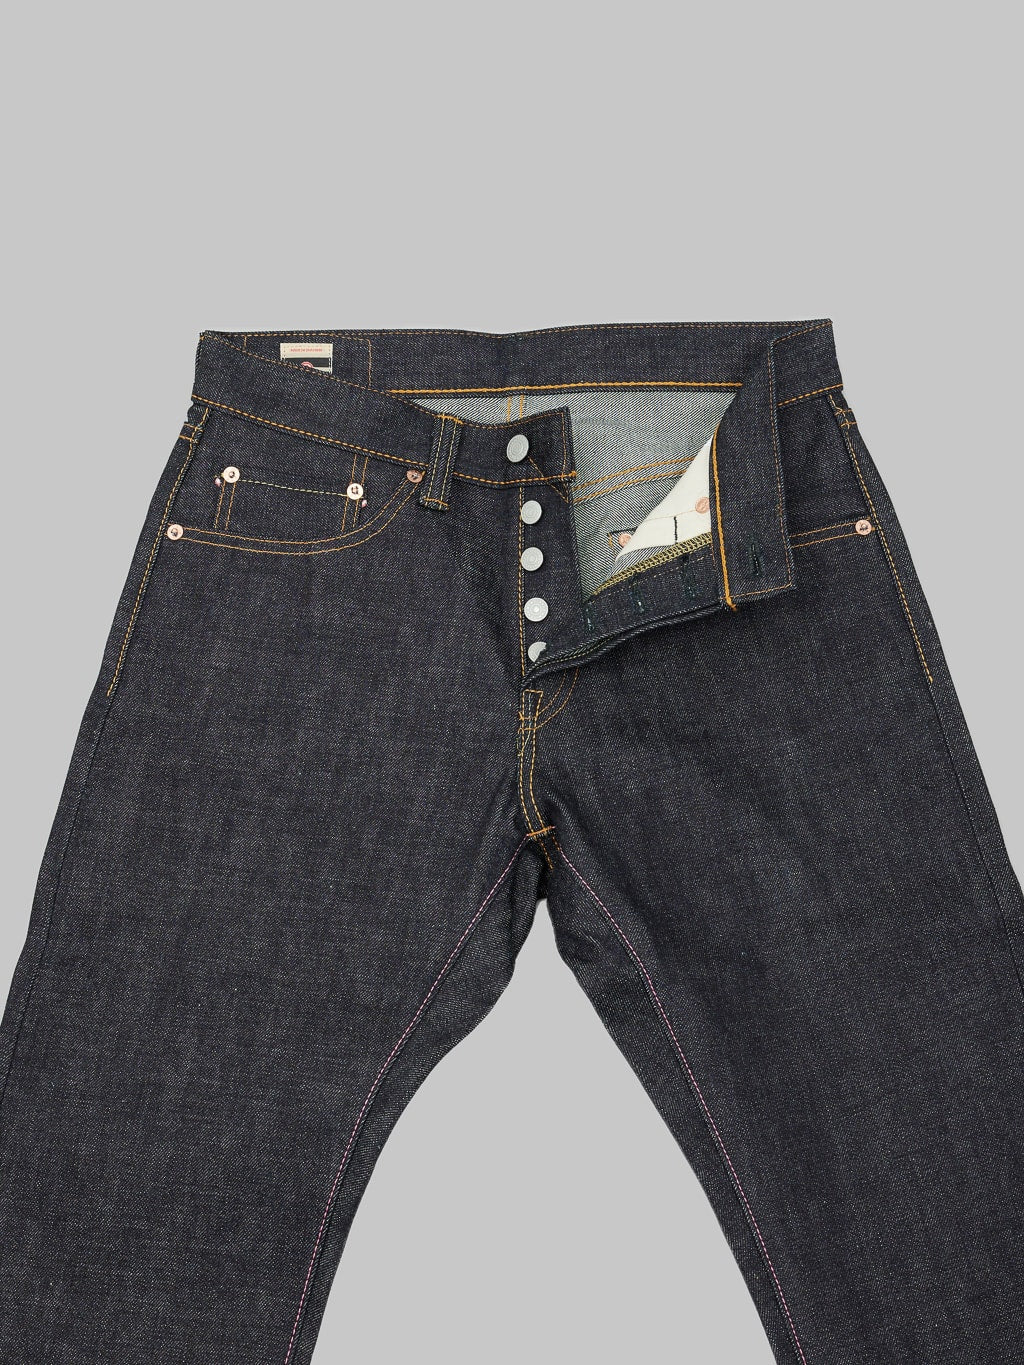 momotaro jeans 0405 v selvedge denim high tapered high rise